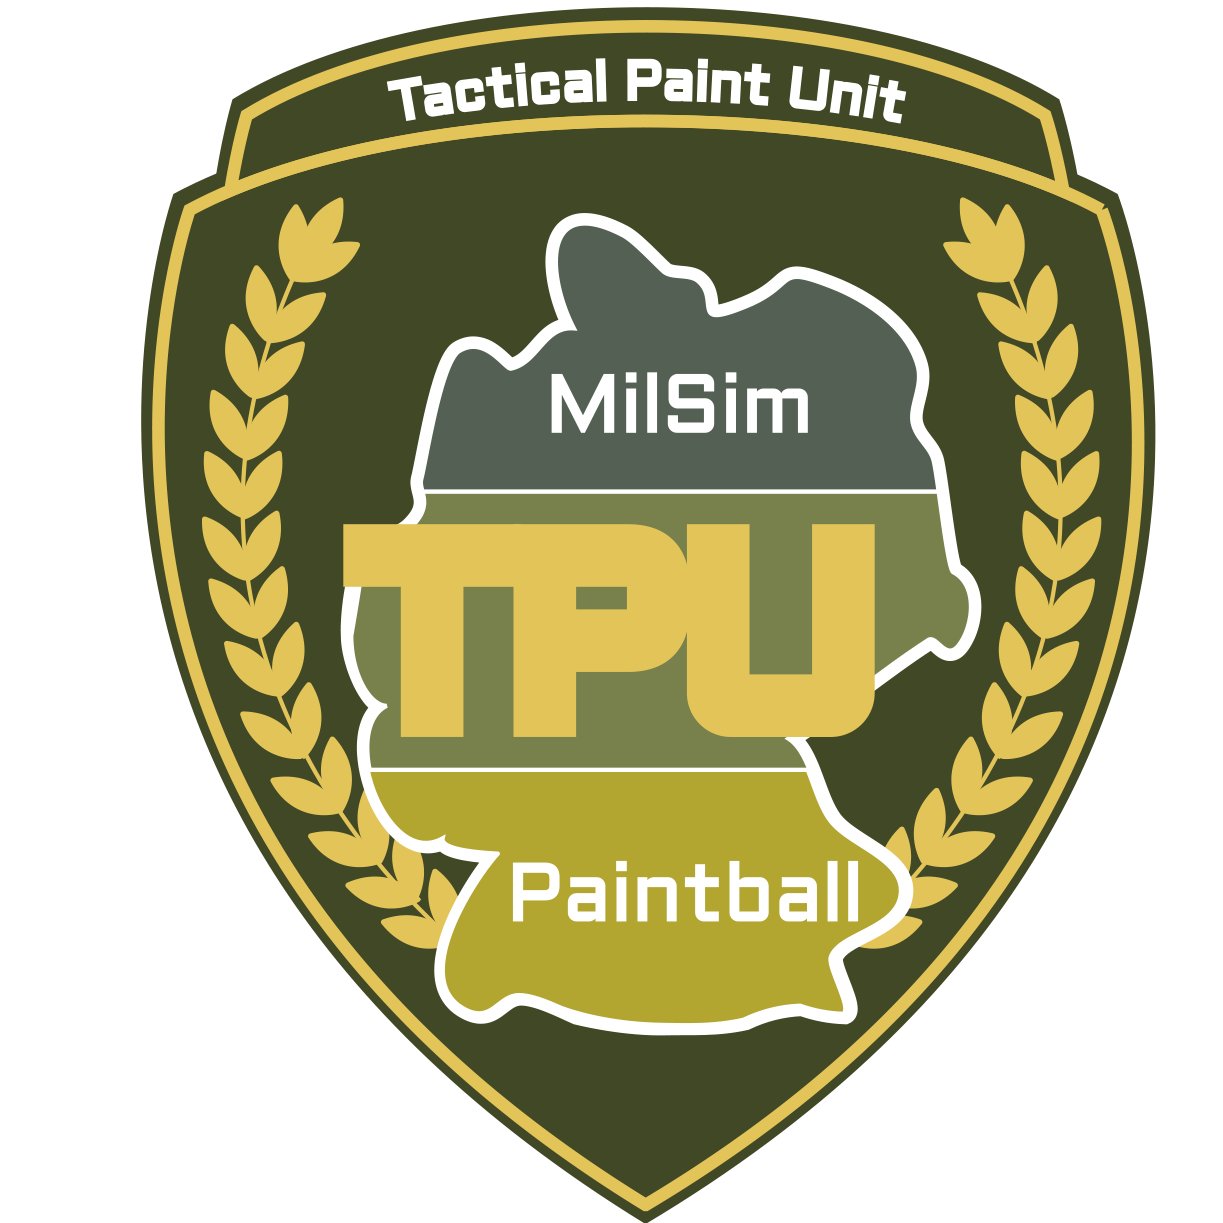 Tactical Paint Unit